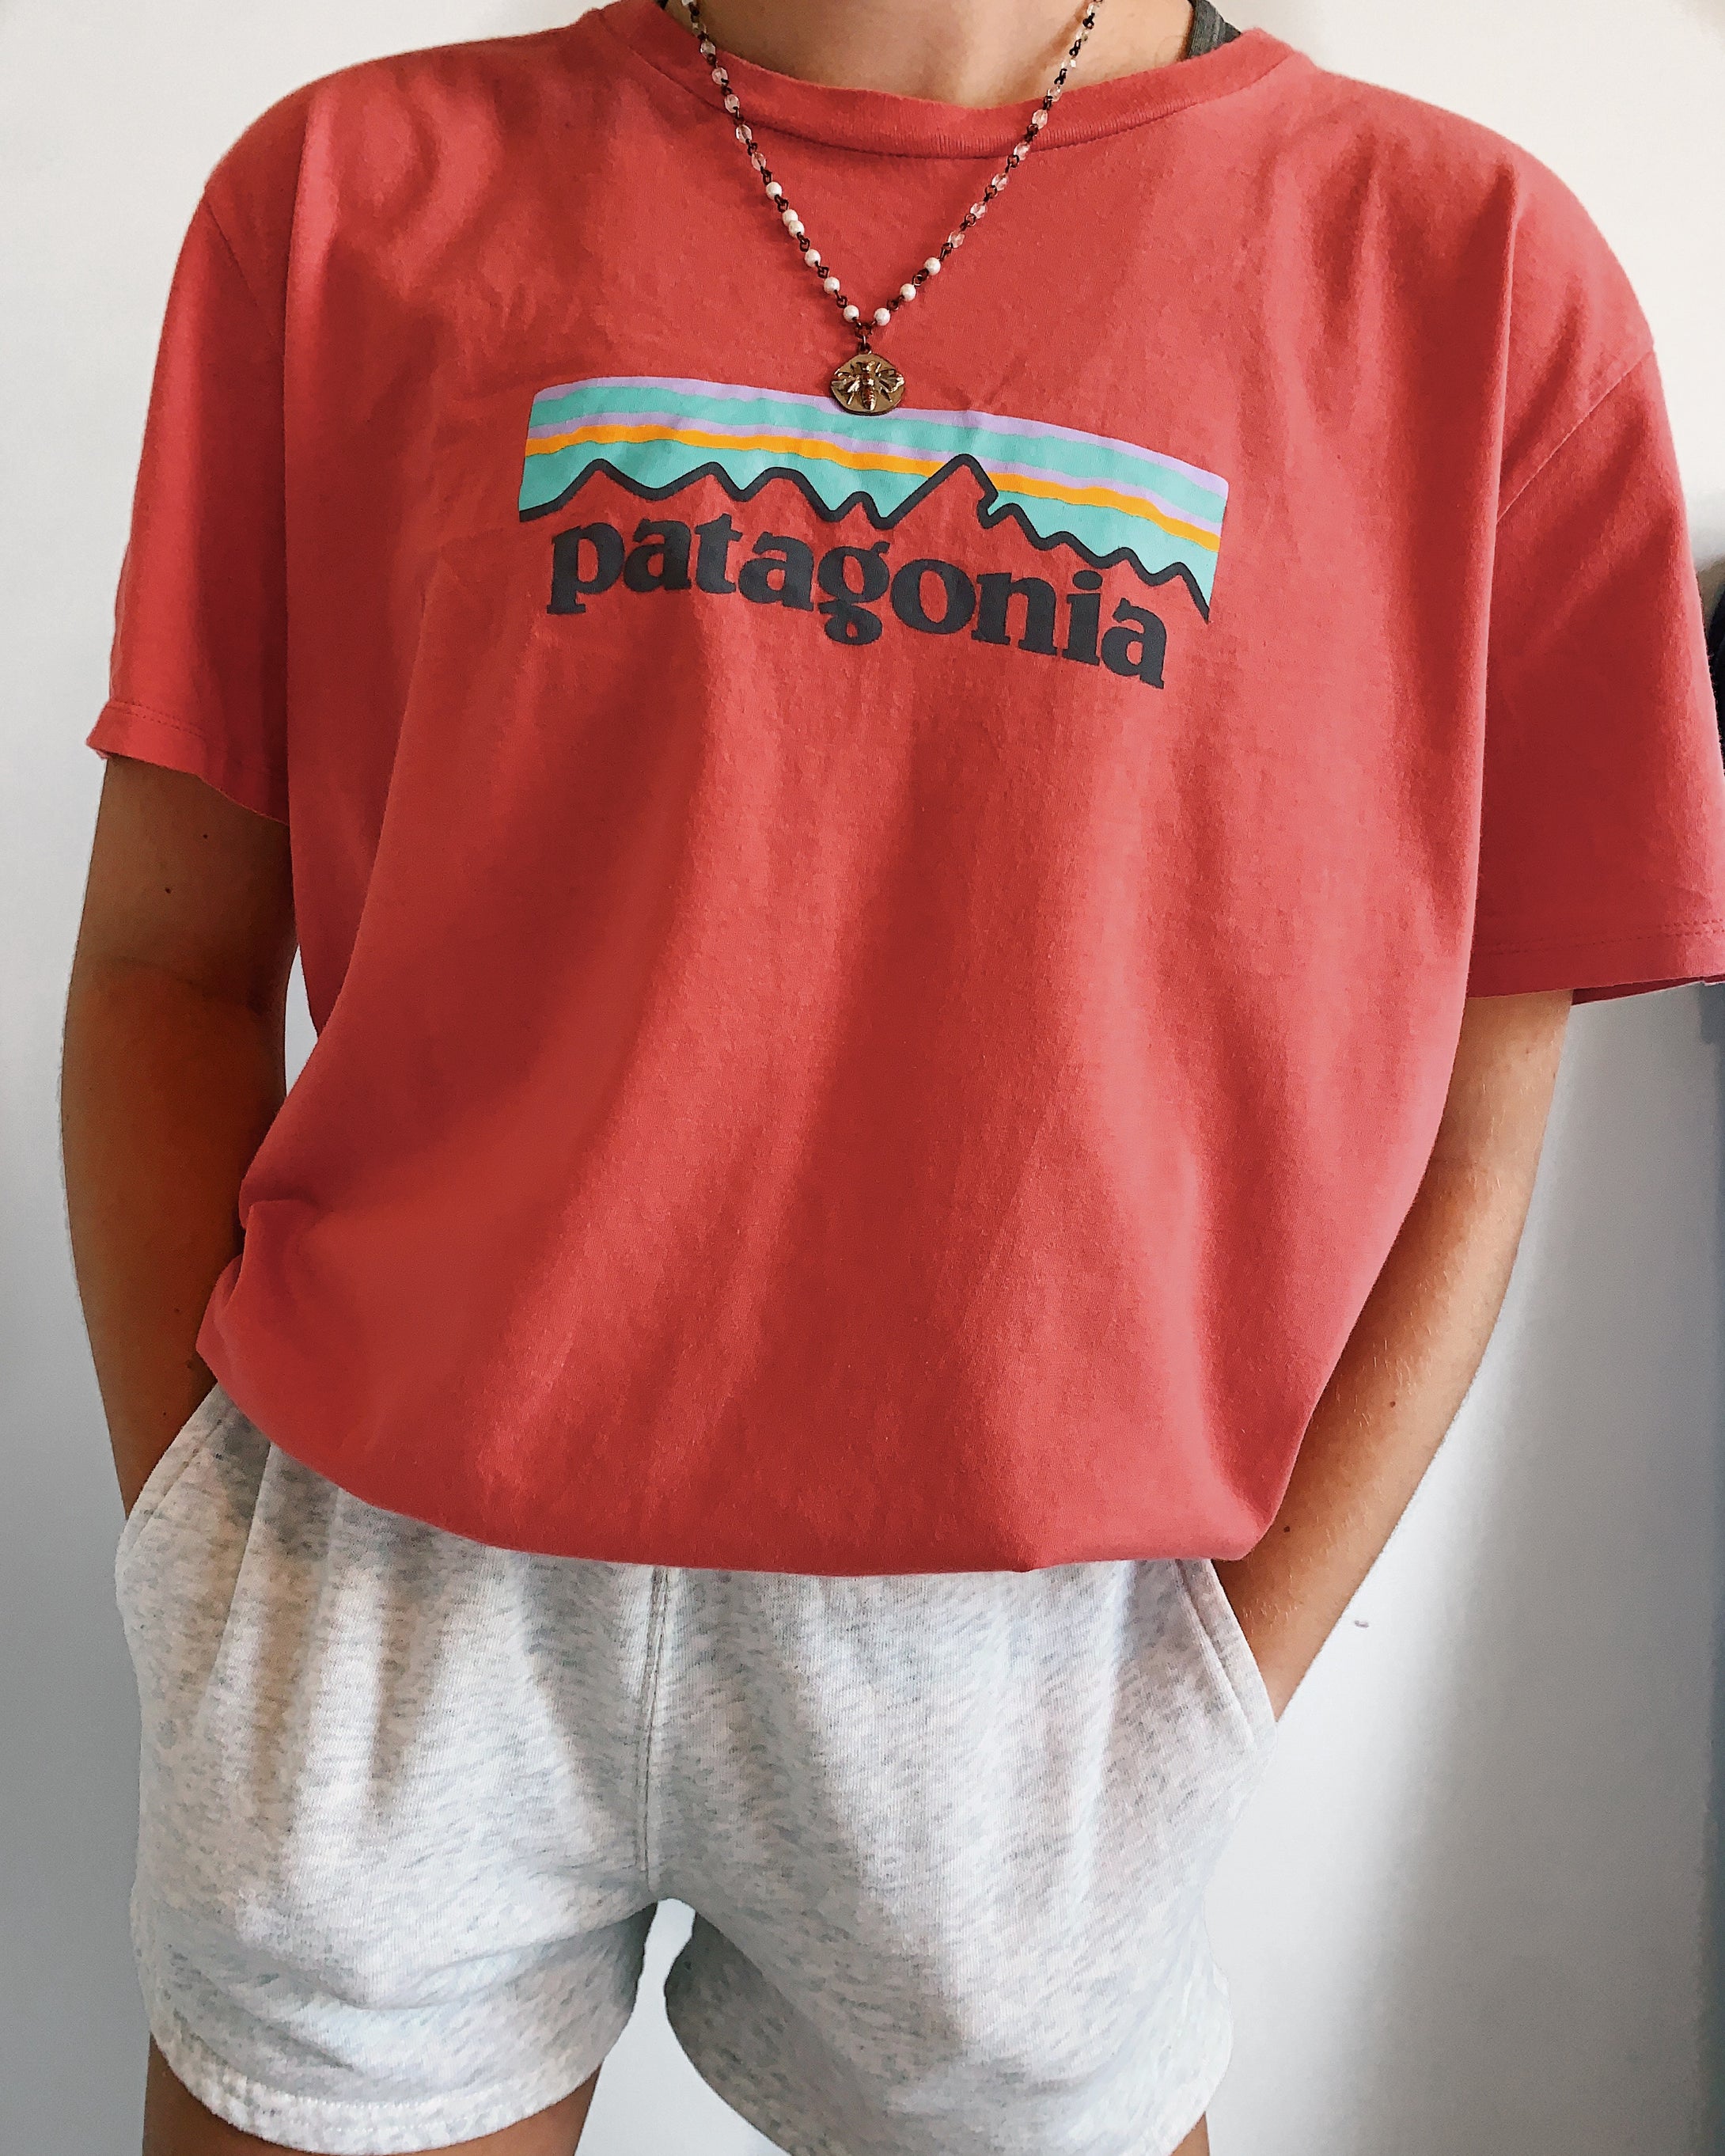 Patagonia shirt